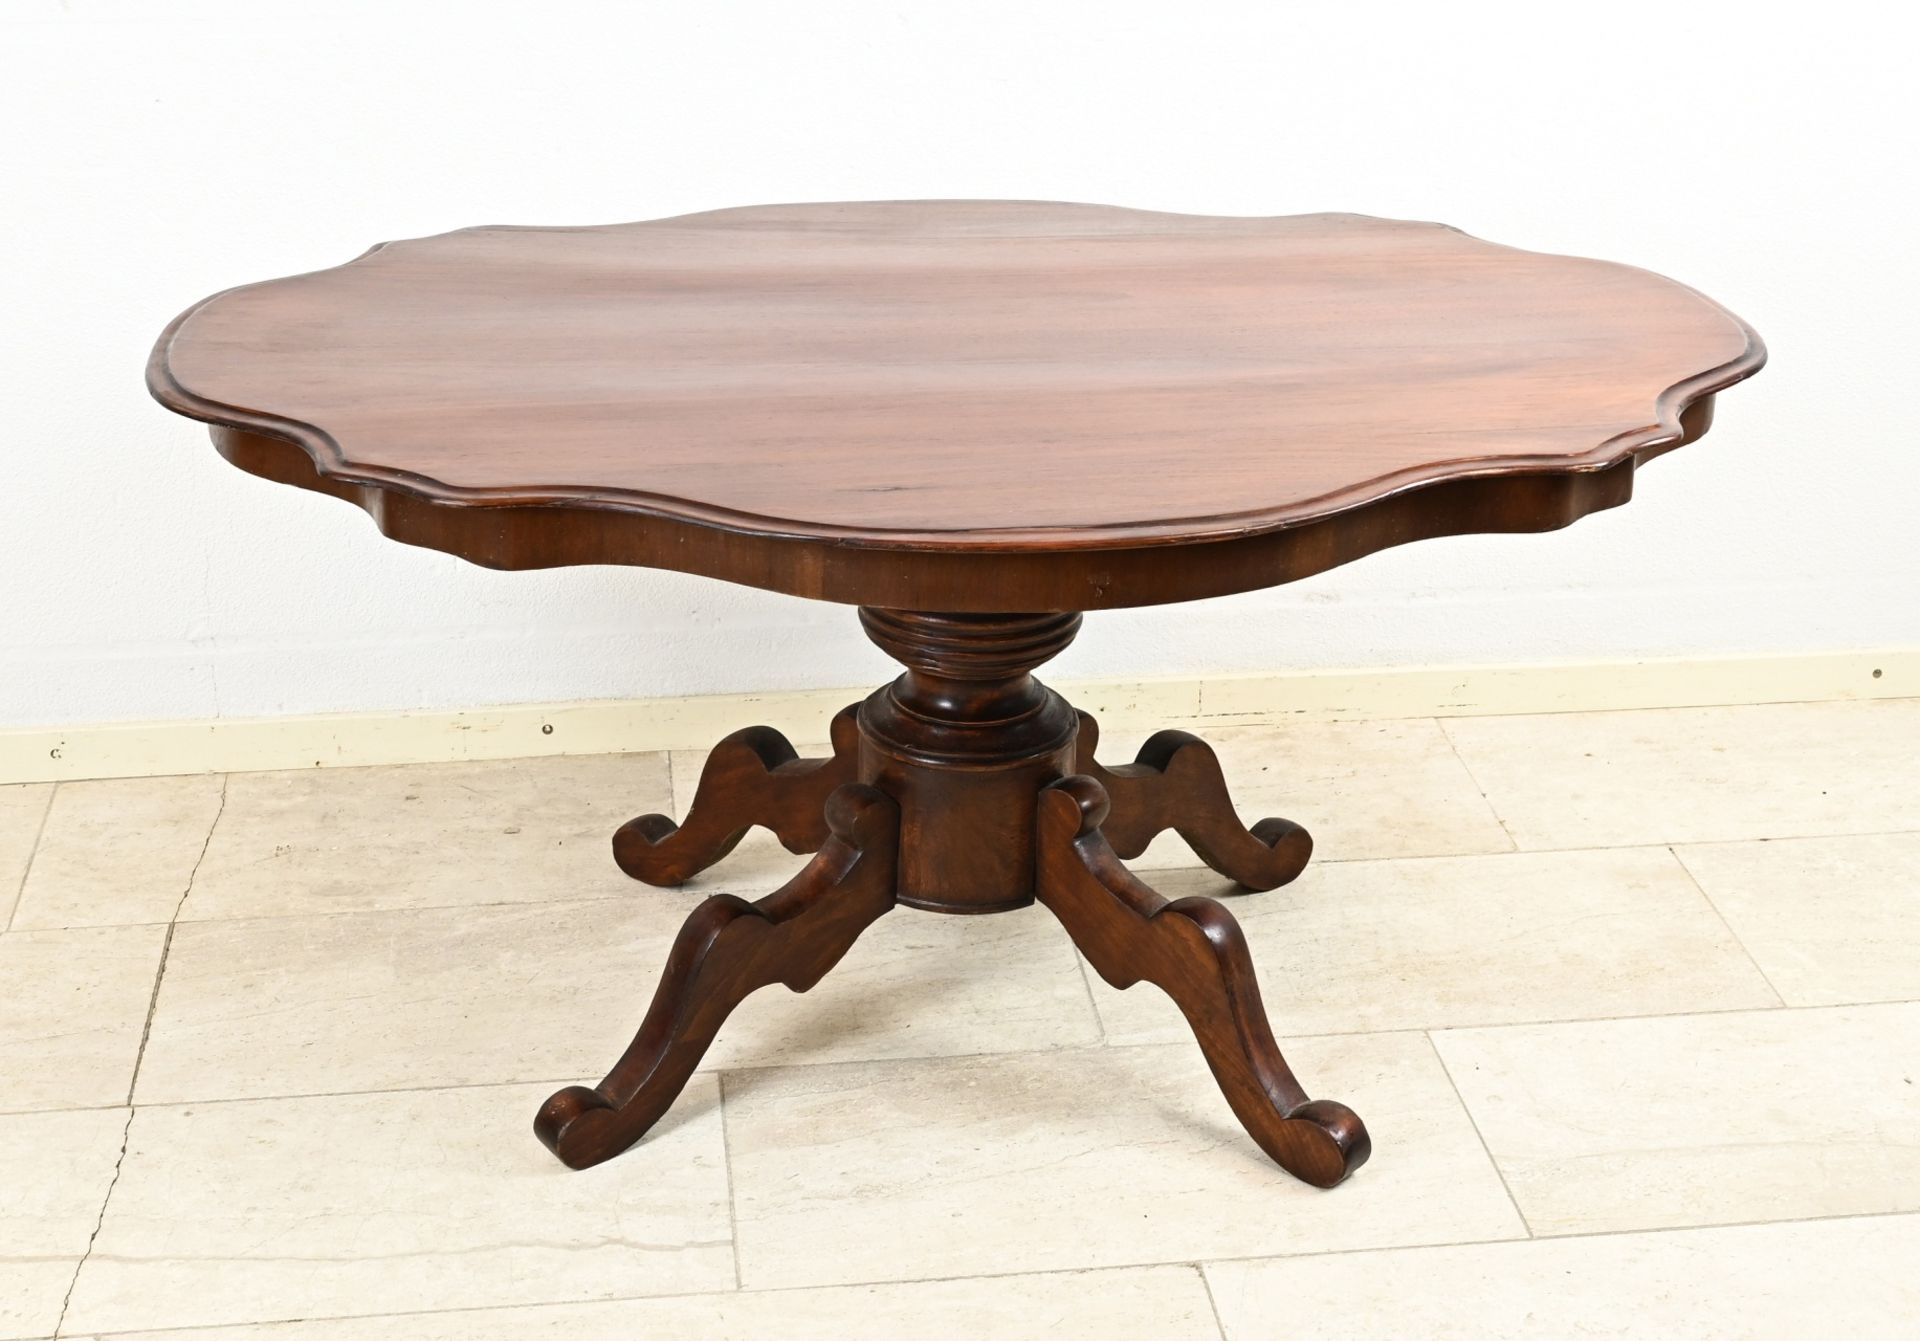 Mahogany table, 1860